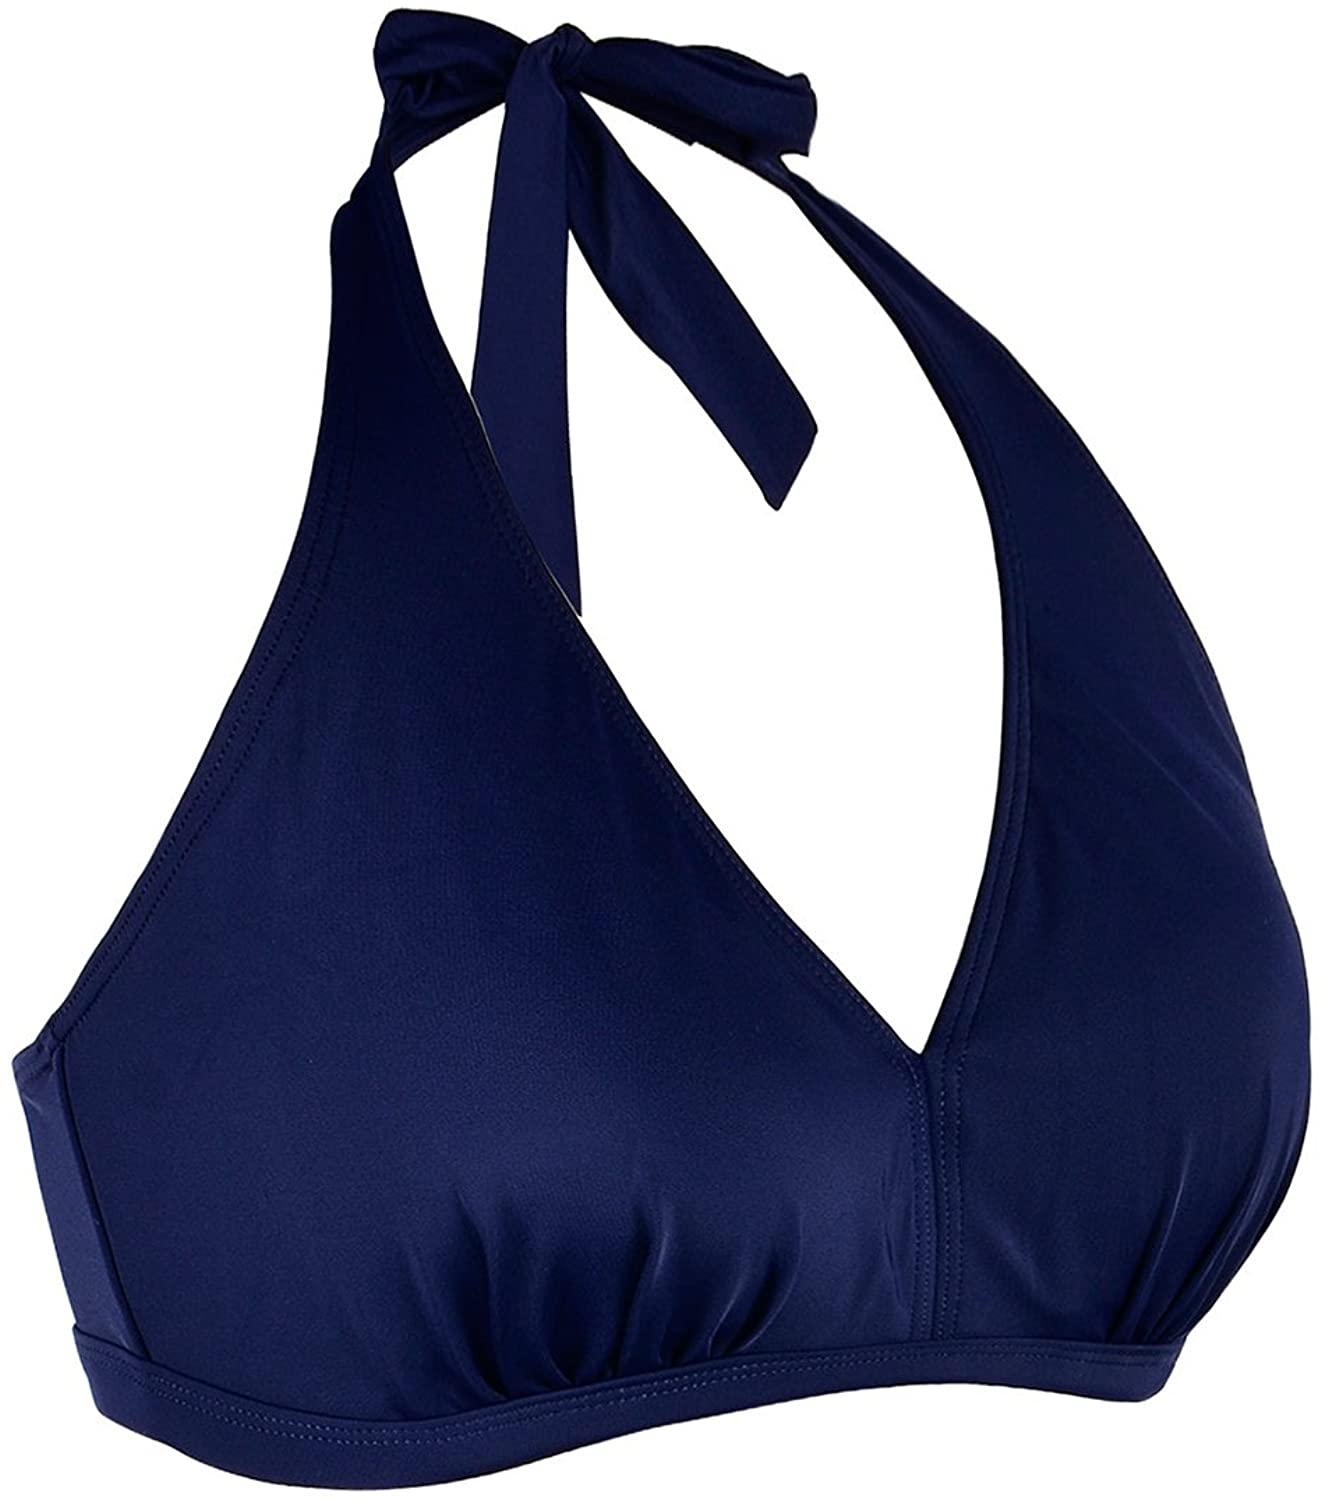 Septangle Women's Soild Halter Top Bikini Push Up Swimsuit, Navy Blue ...